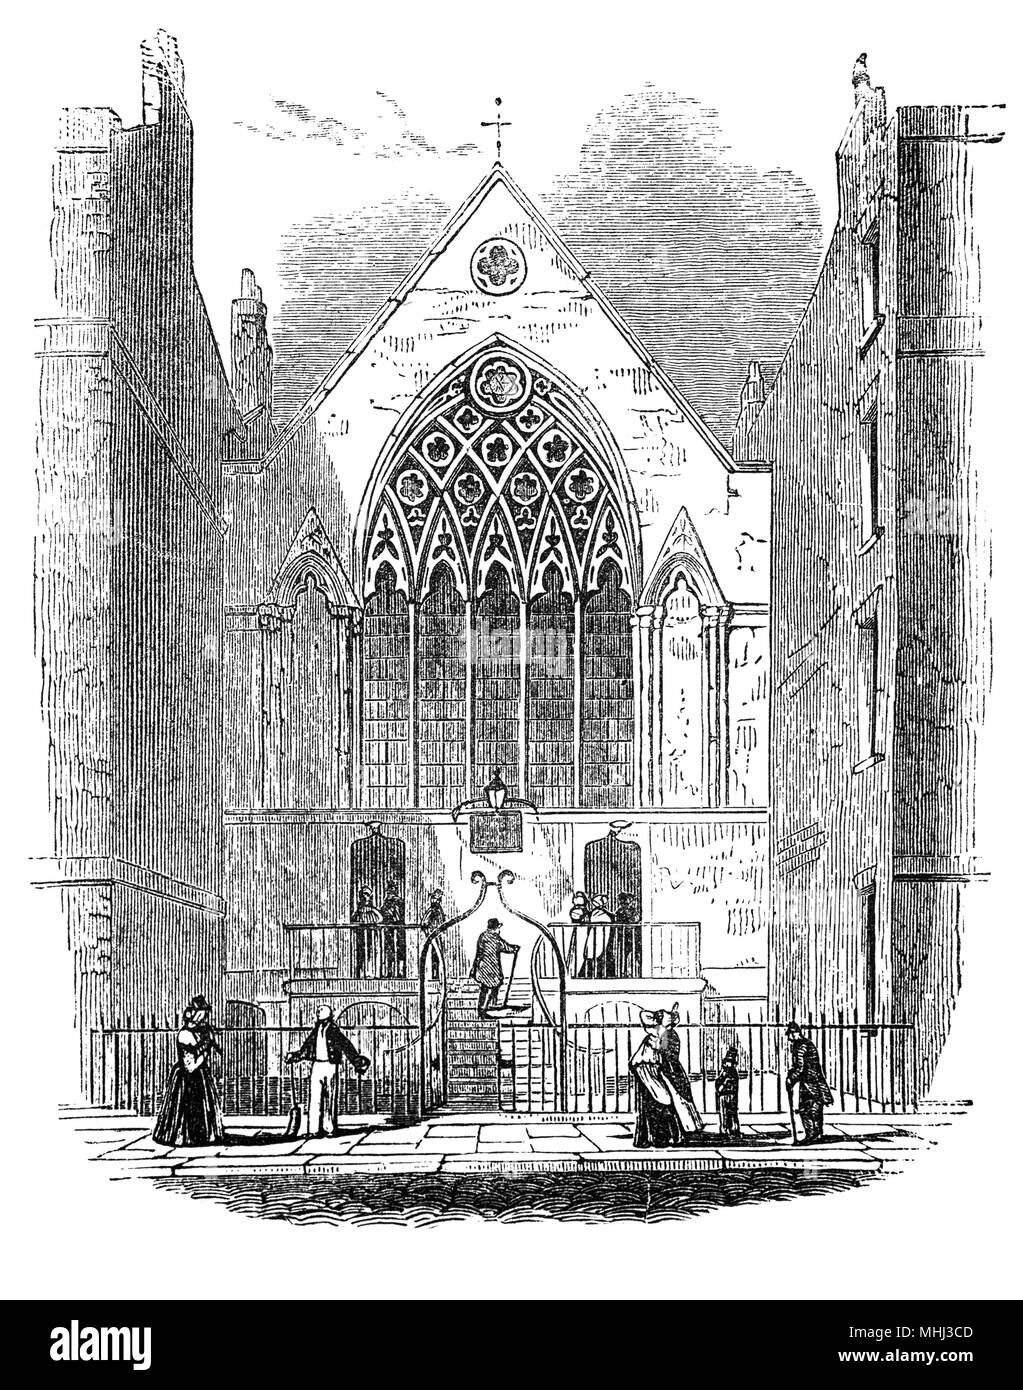 La chapelle du palais ou Ely Ely House, London townhouse des évêques d'Ely de 1290 à 1772. Le 17 octobre 1546, James Butler, 9e comte d'Ormond, un puissant propriétaire de Munster qui avait servi dans la maison du Cardinal Wolsey, dans sa jeunesse, a traversé l'Éternel querelleur Vice-d'Irlande, Sir Anthony St Leger, qui était en visite à Londres avec sa famille. Ils ont été invités à dîner au palais d'Ely, où Ormond fut empoisonné avec son intendant et 16 de sa maison, il a été largement supposé, à l'ordre de St Leger. Banque D'Images